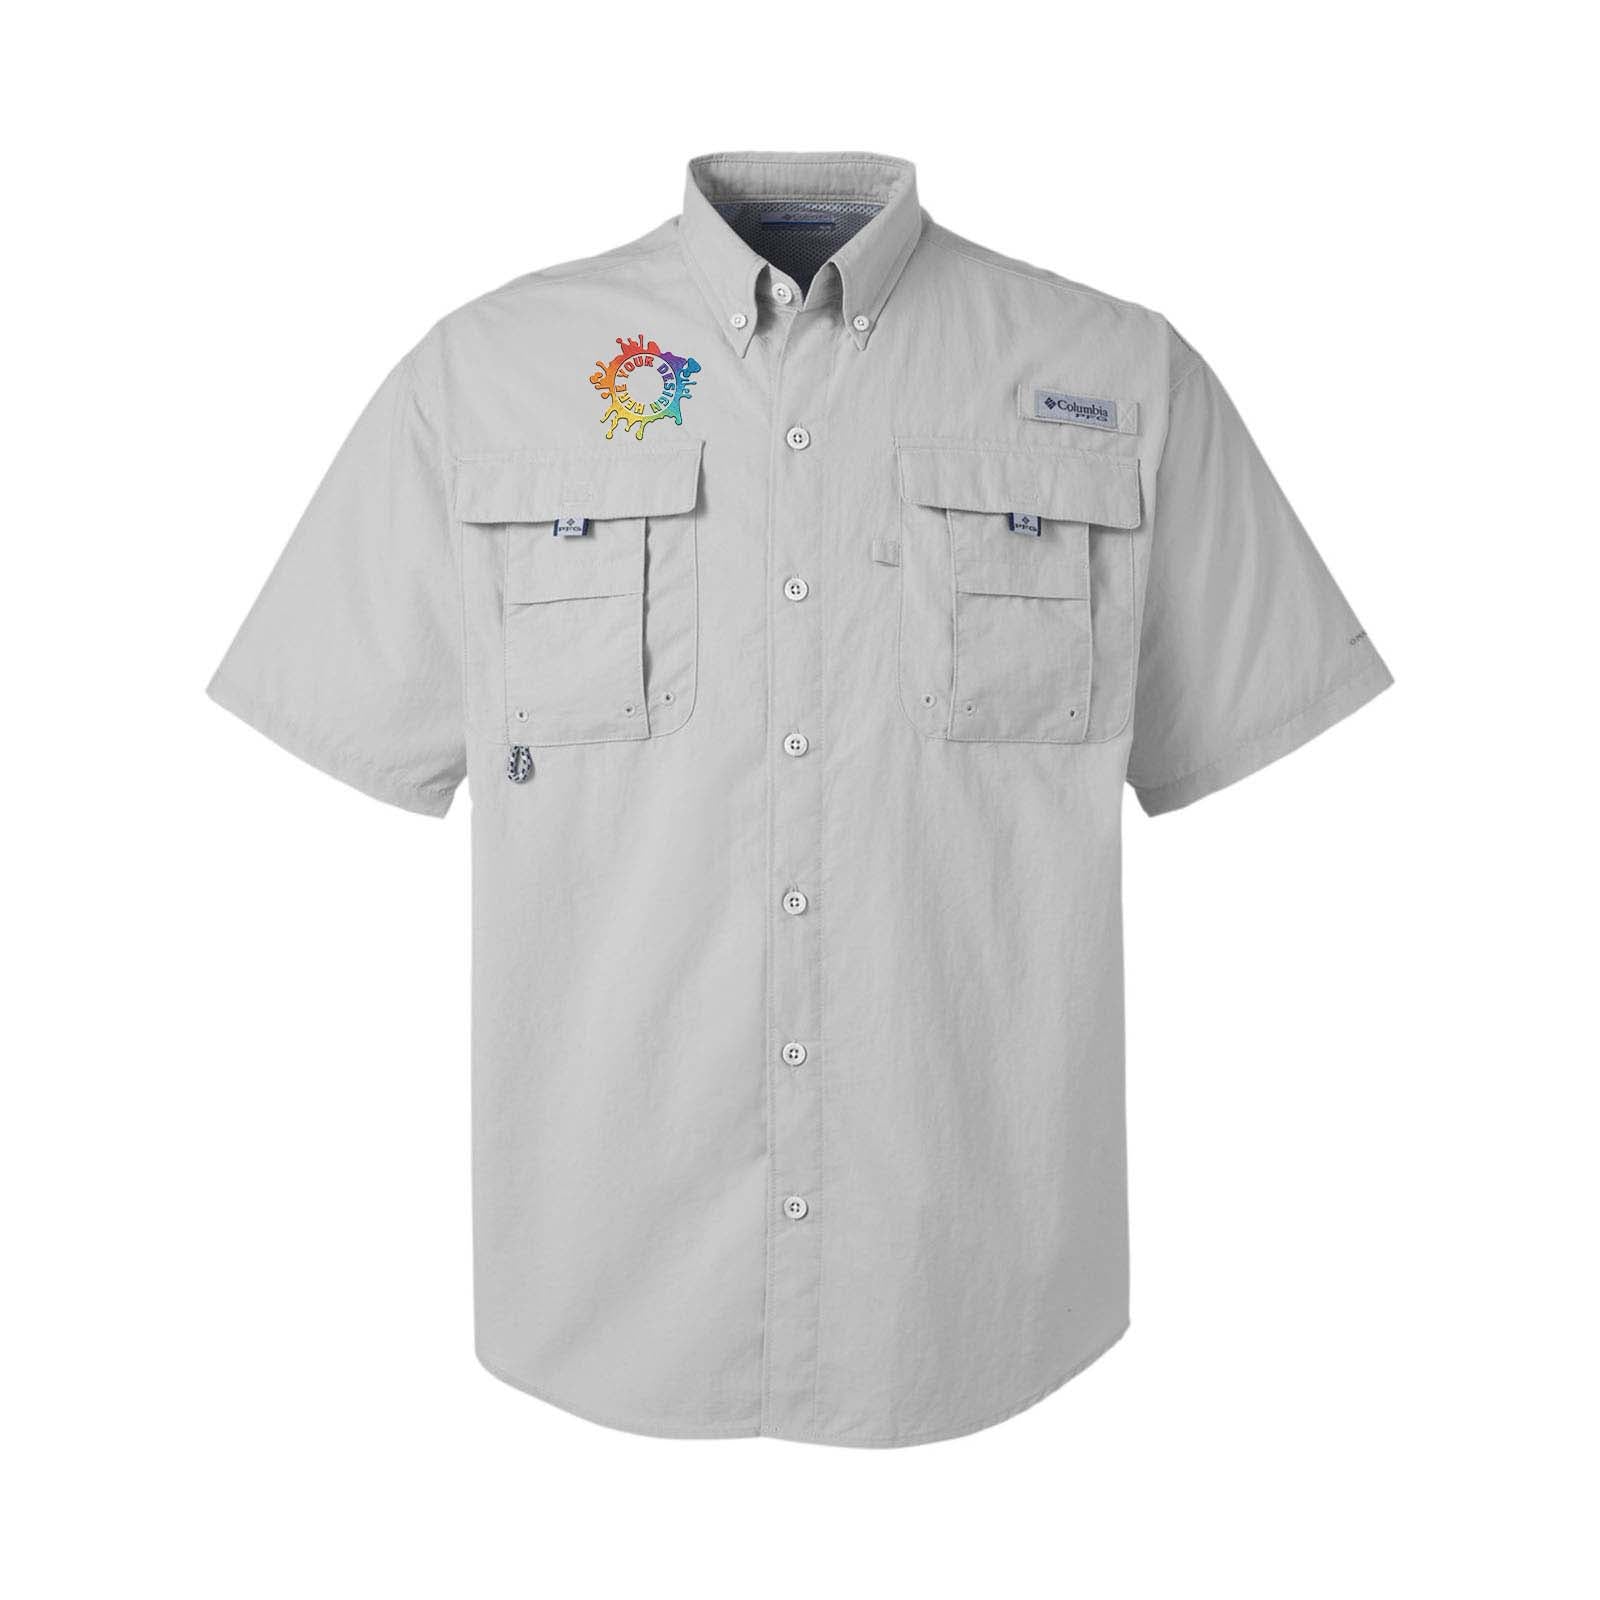 Columbia Men's Bahama II Short Sleeve Shirt  Fishing shirts, Short sleeve  shirt, Shirts